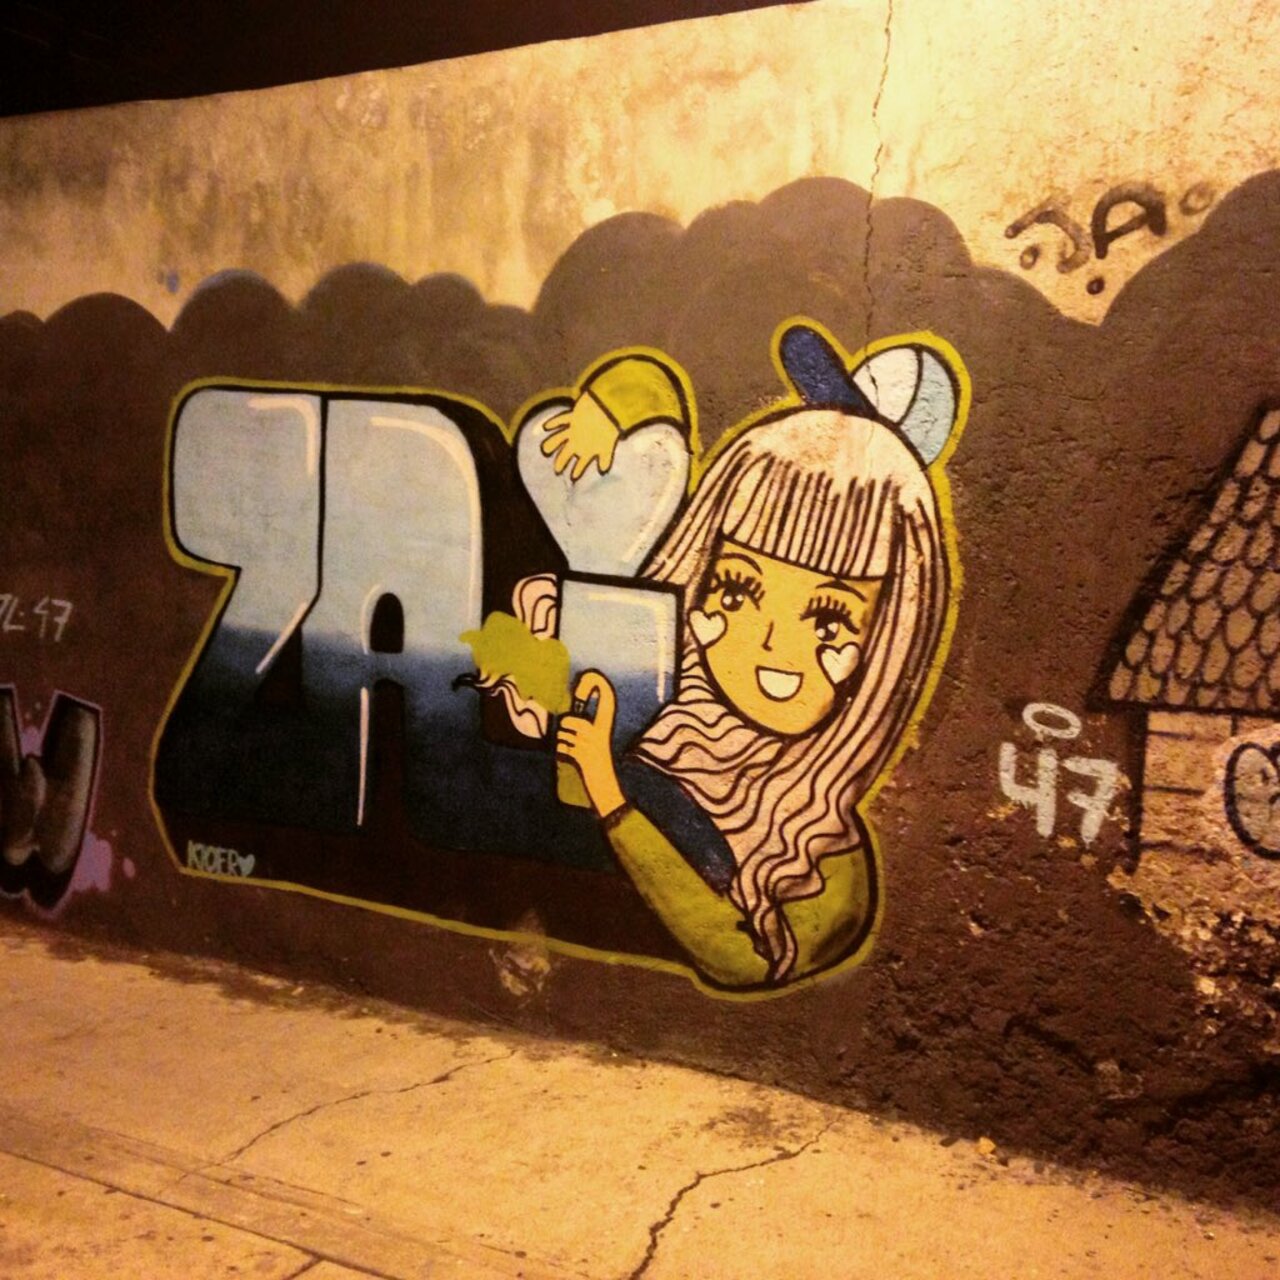 [Rascal Girl] #Graffiti #StreetArt #ArtDeRue #ArteUrbano https://instagram.com/p/9M-uyVB5he/ https://t.co/1zaiHICJPE